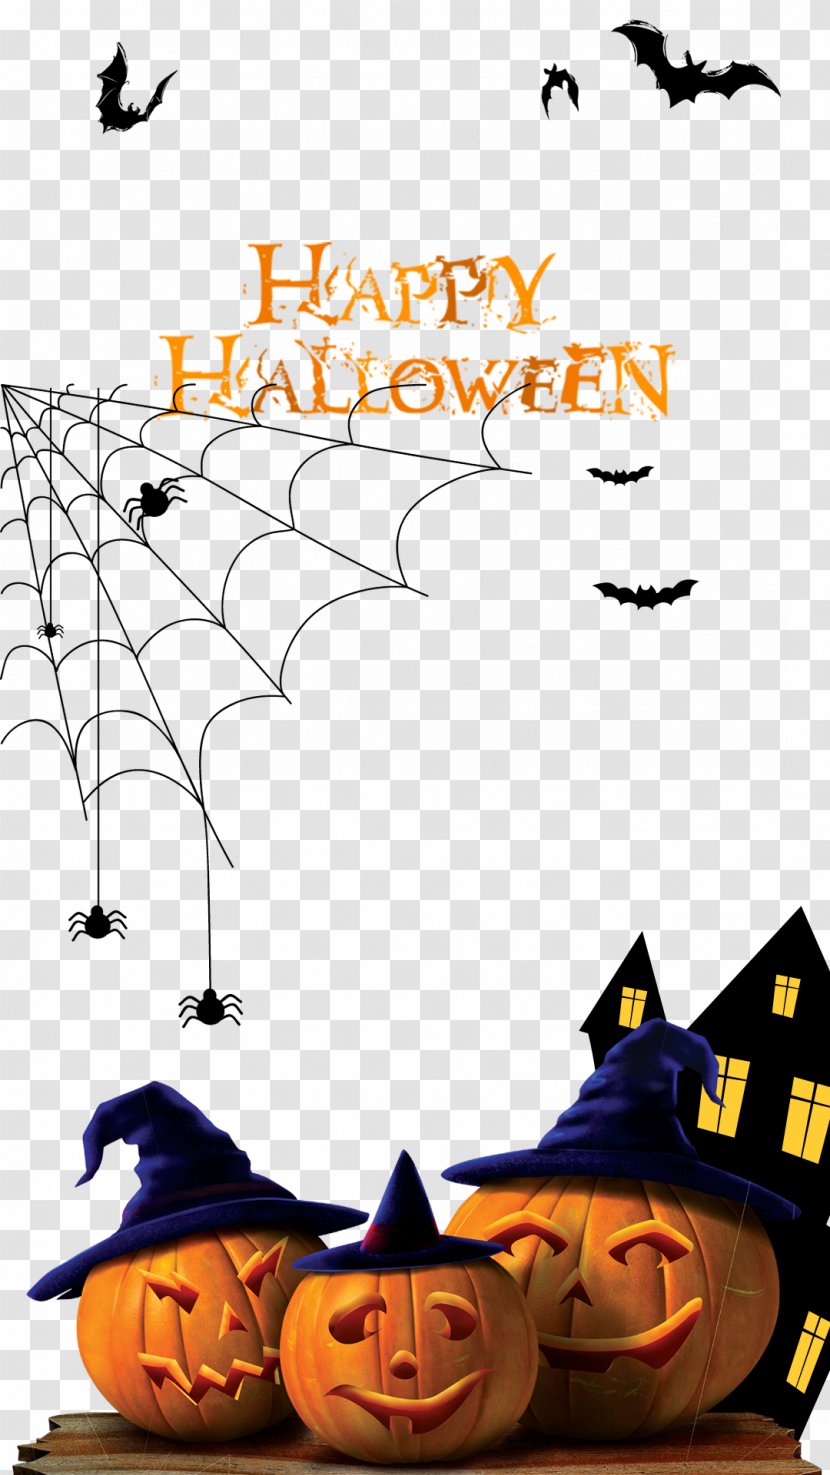 Halloween Poster Paper Jack-o'-lantern - Illustration - Pictures Transparent PNG